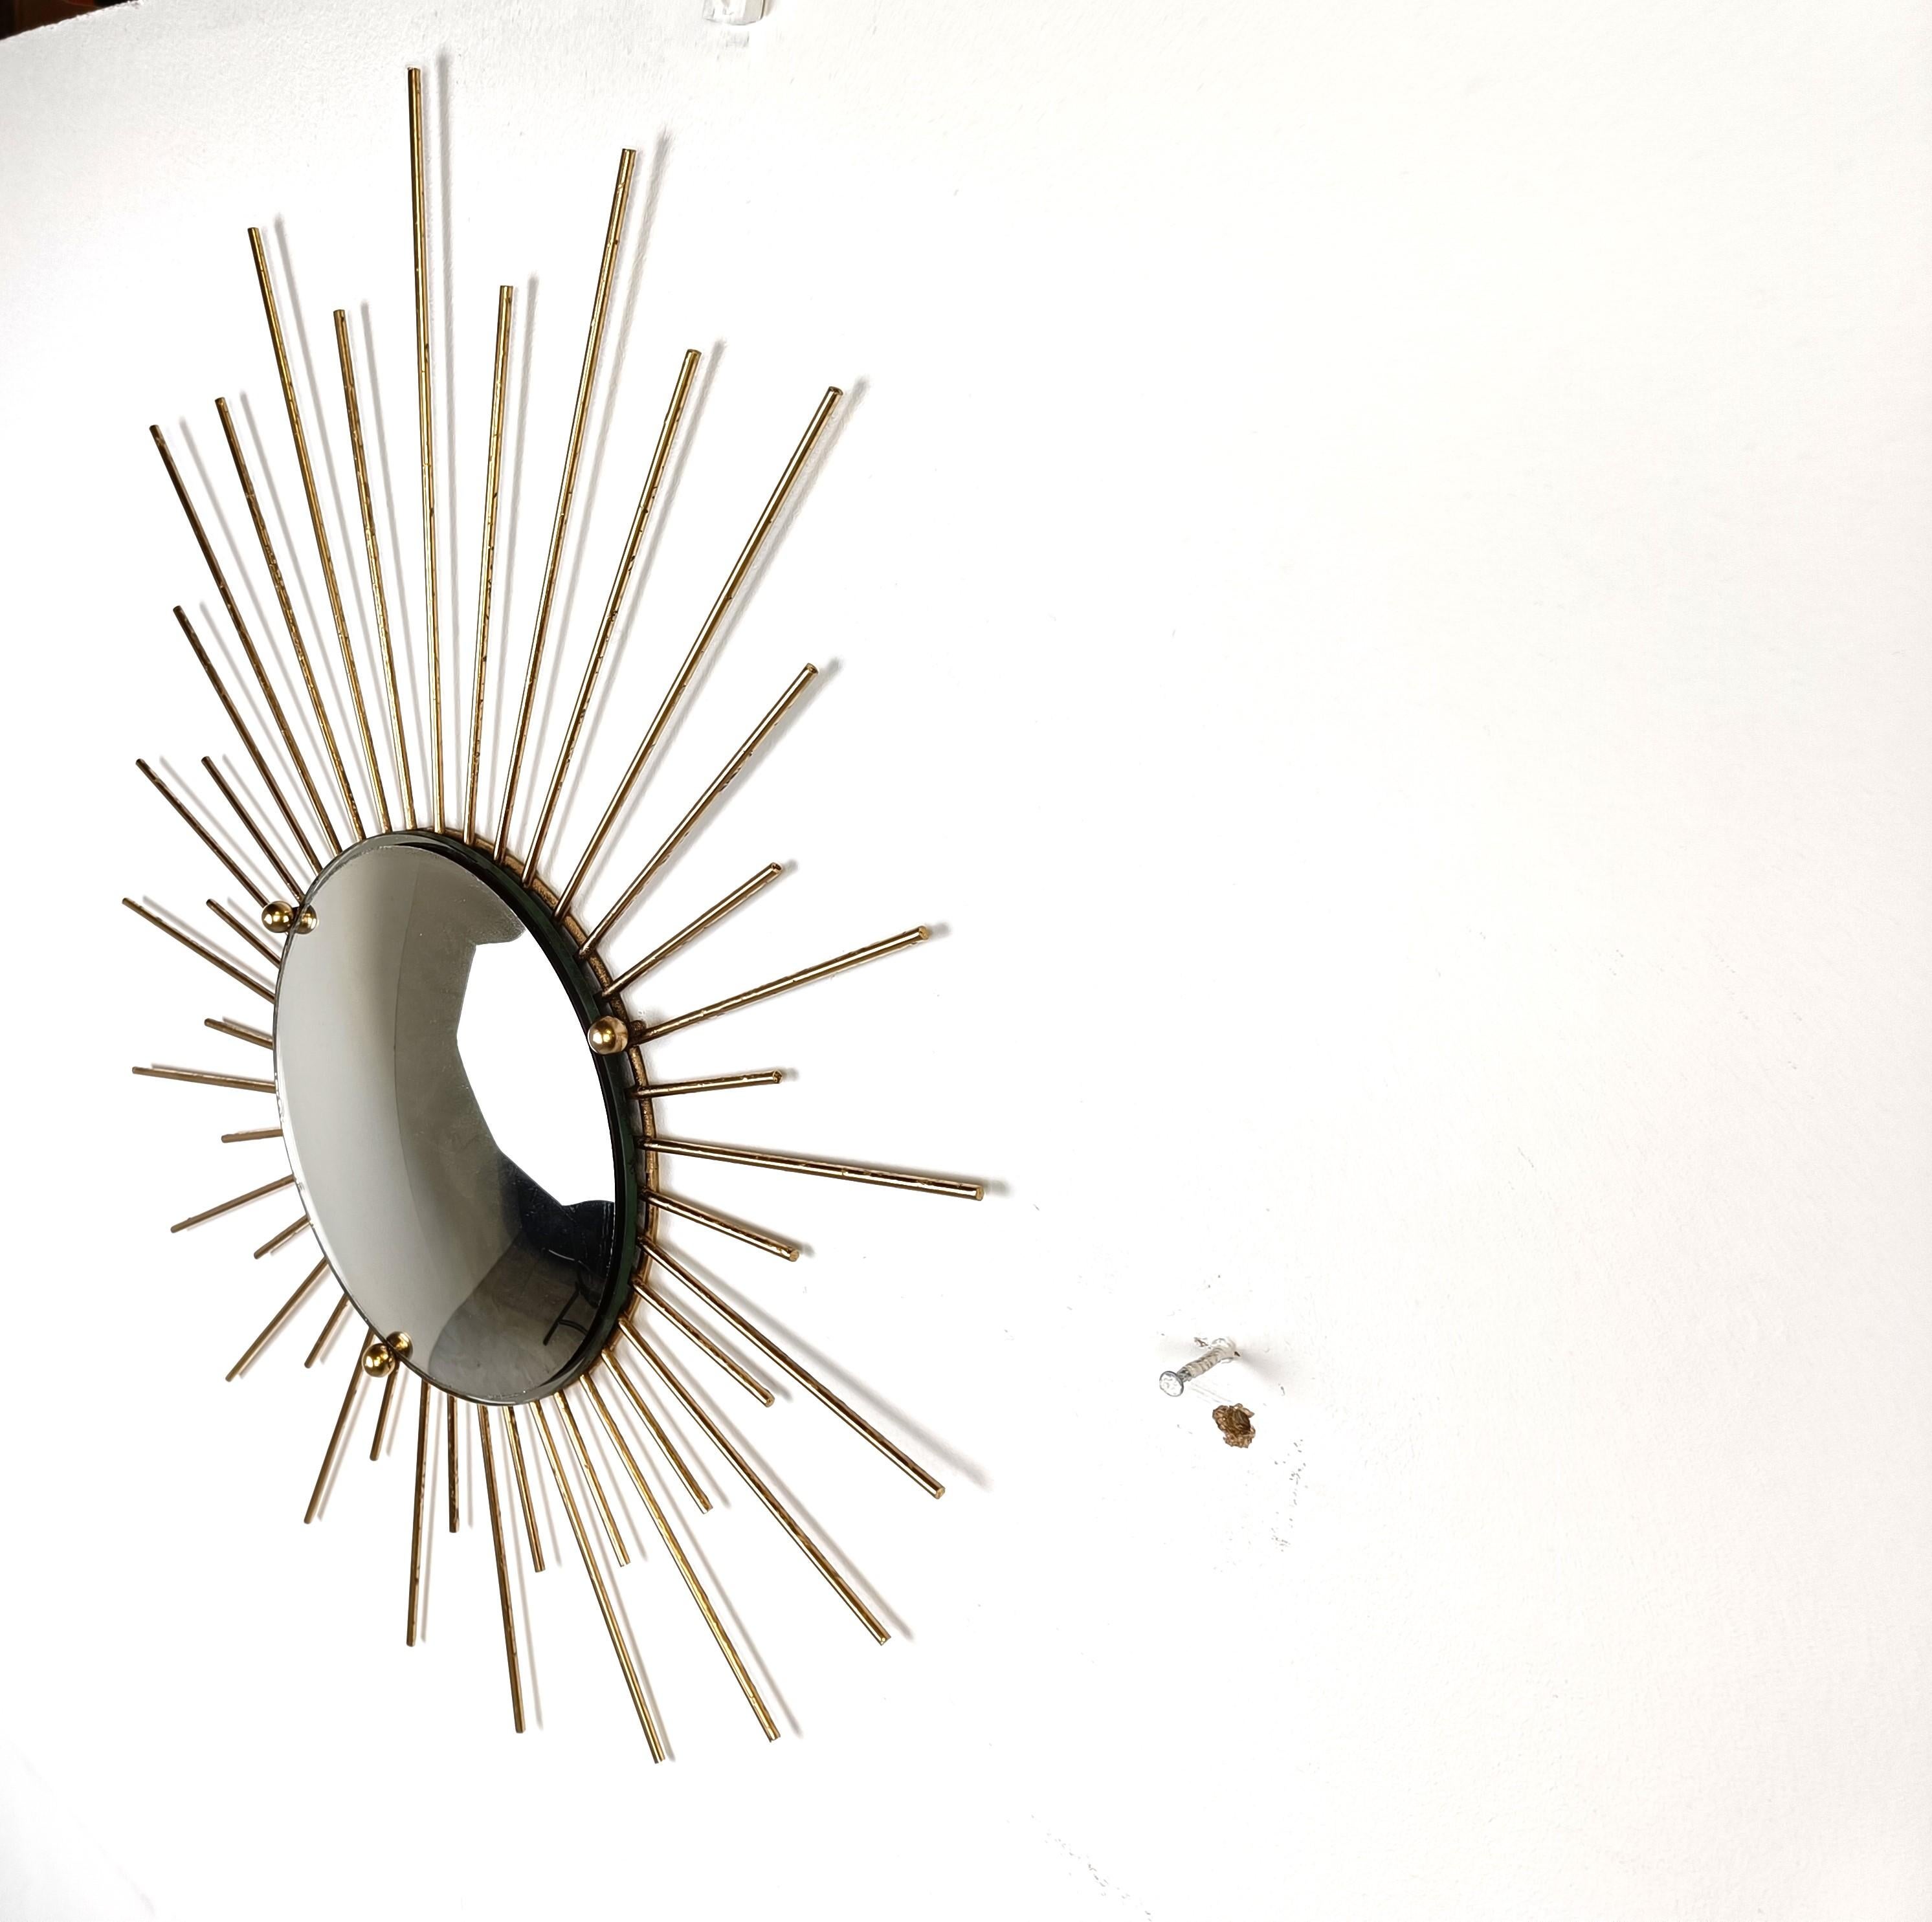 Großer minimalistischer Sonnenschliffspiegel aus Messing aus der Mitte des Jahrhunderts mit konvexem Glas.

Dieser Spiegel passt in die meisten Innenräume und ist eine perfekte Ergänzung für eine Einrichtung im Regency-Stil.

Der Spiegel ist aus